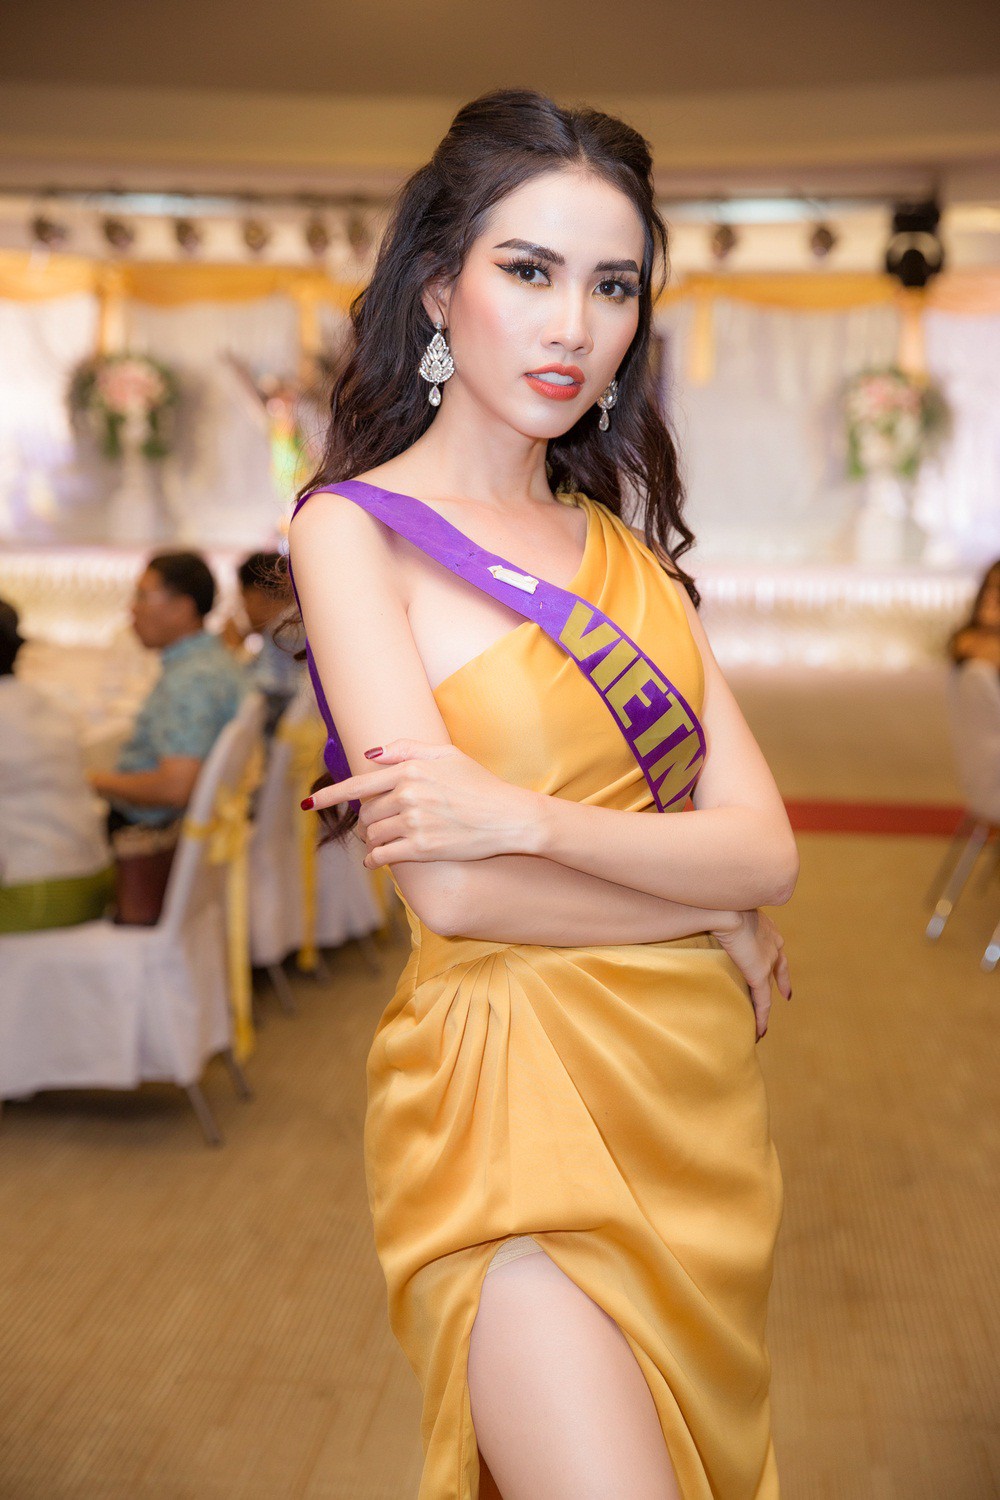 Phan Thi Mơ lọt top 10 phần thi trang phục của Hoa hậu Đại sứ Du lịch Thế giới 2018 - Ảnh 6.